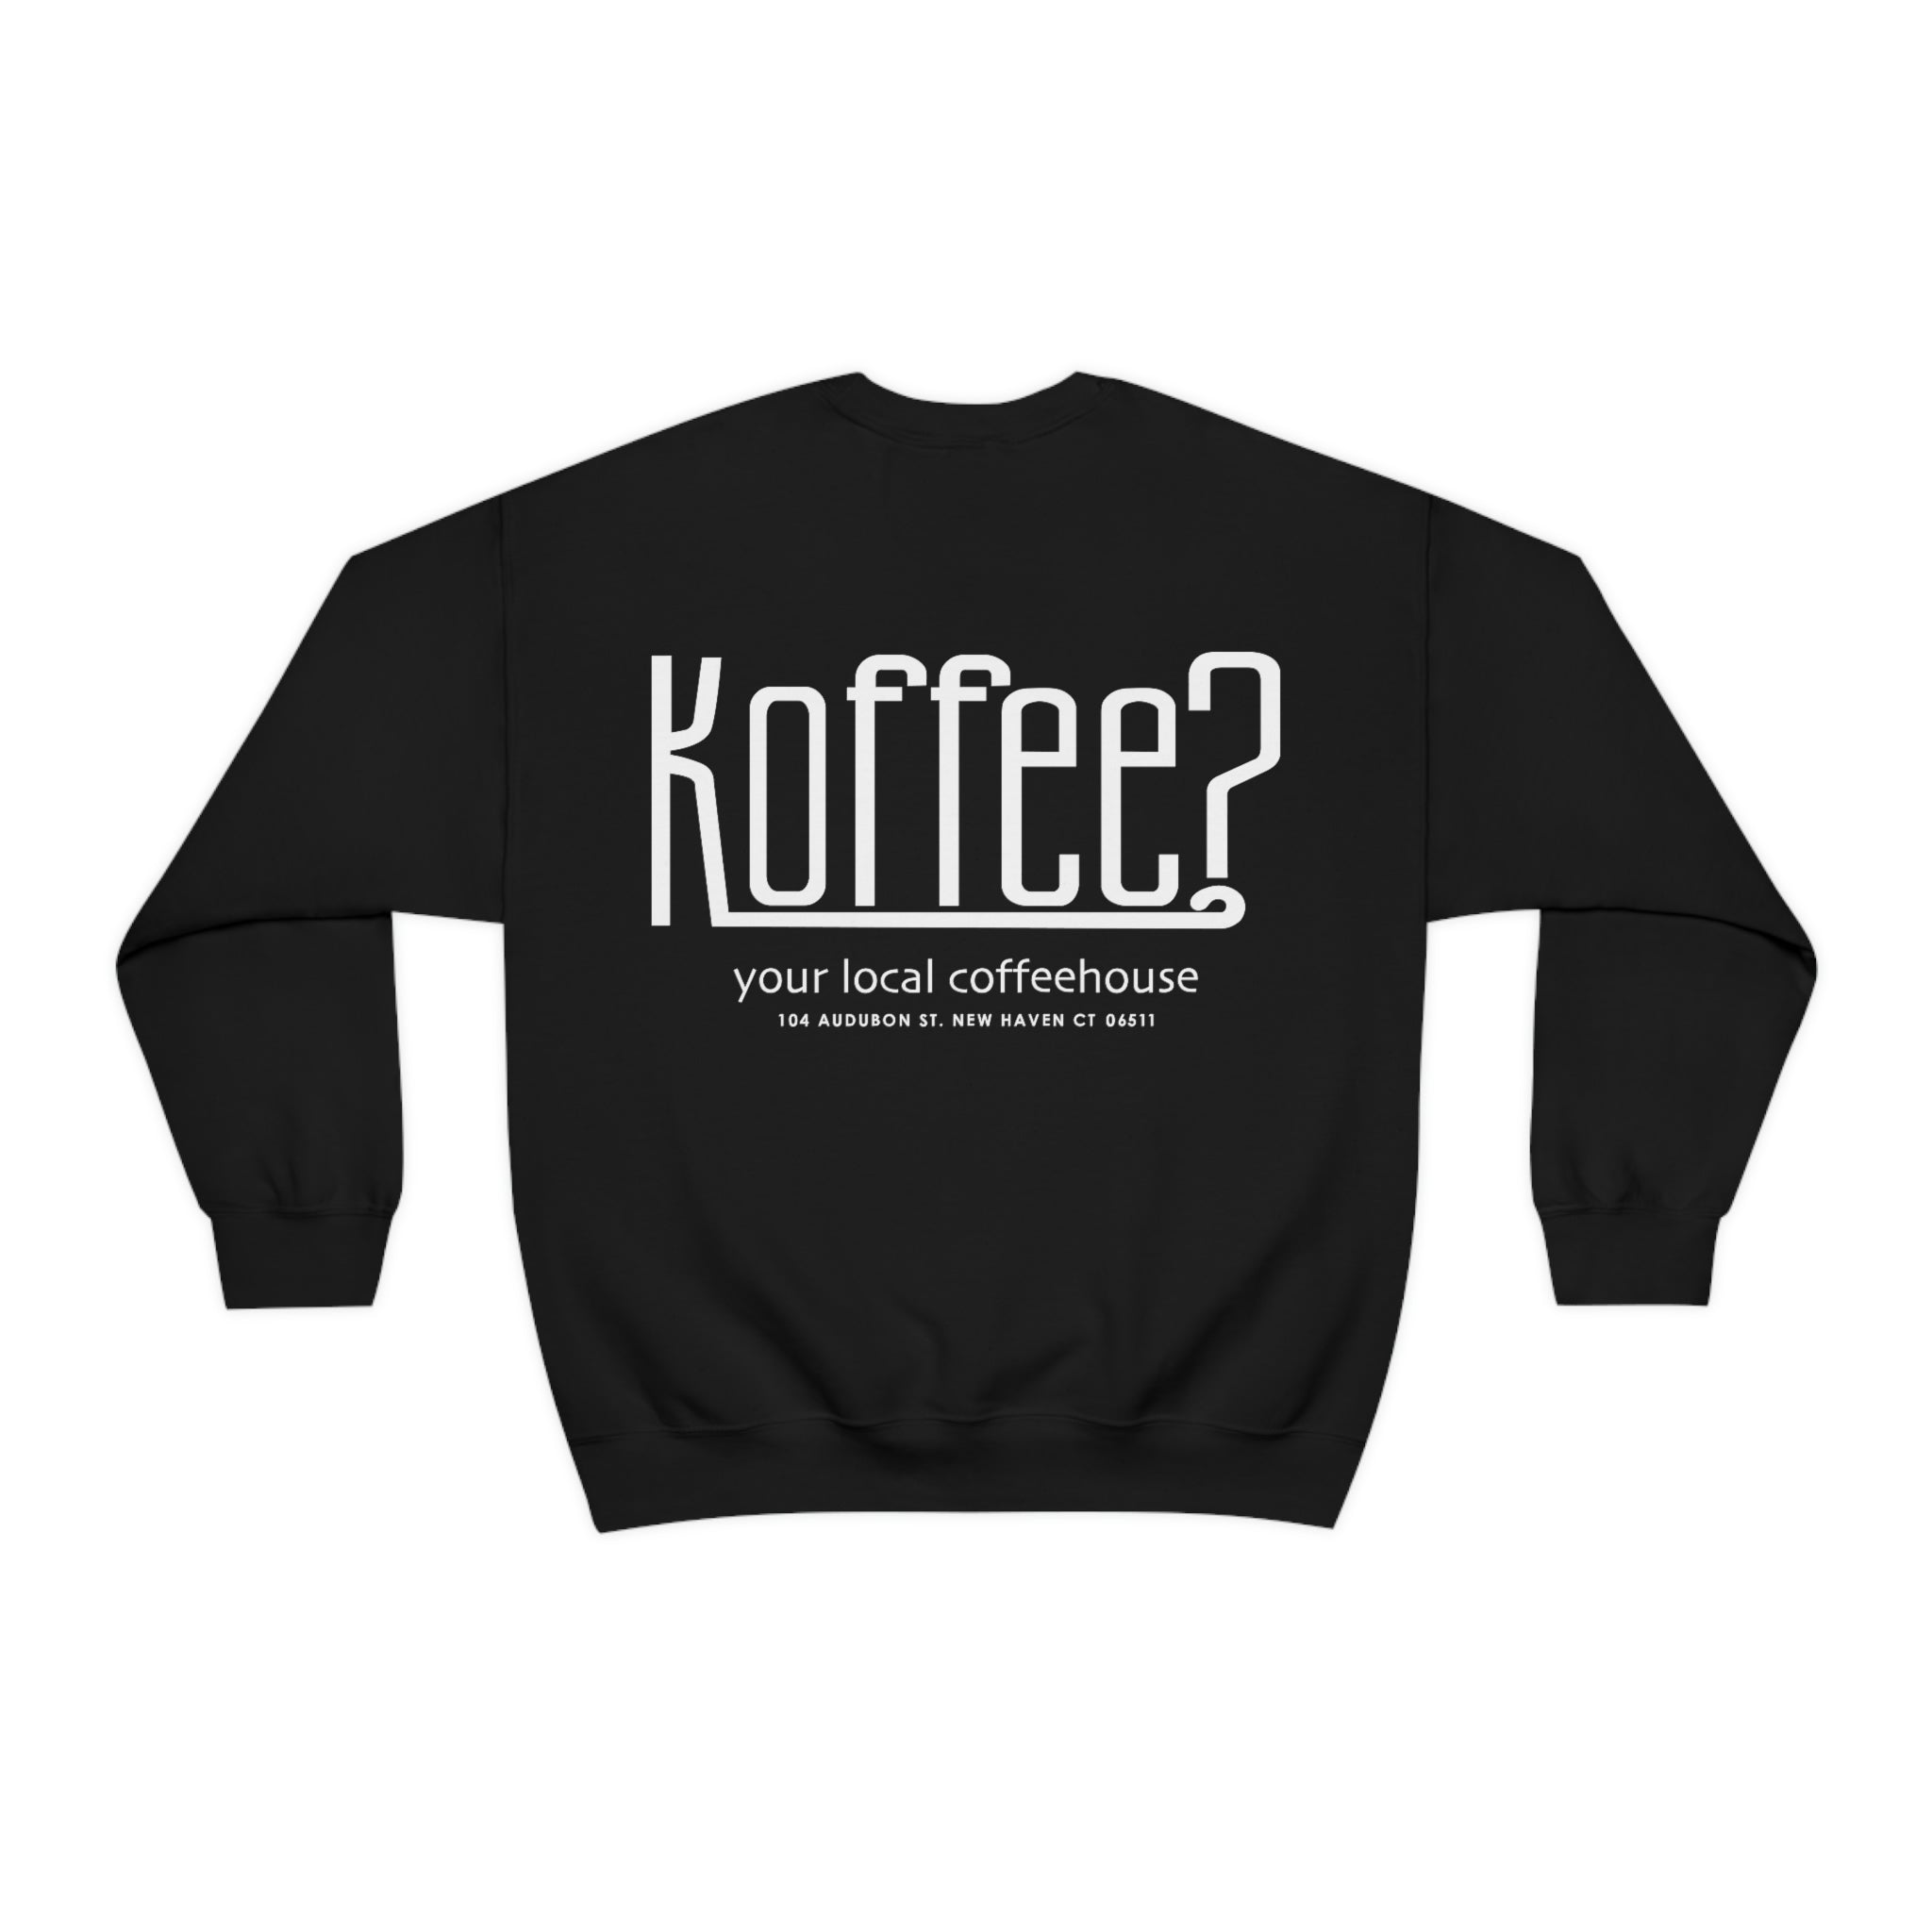 Koffee? Standard Sweatshirt